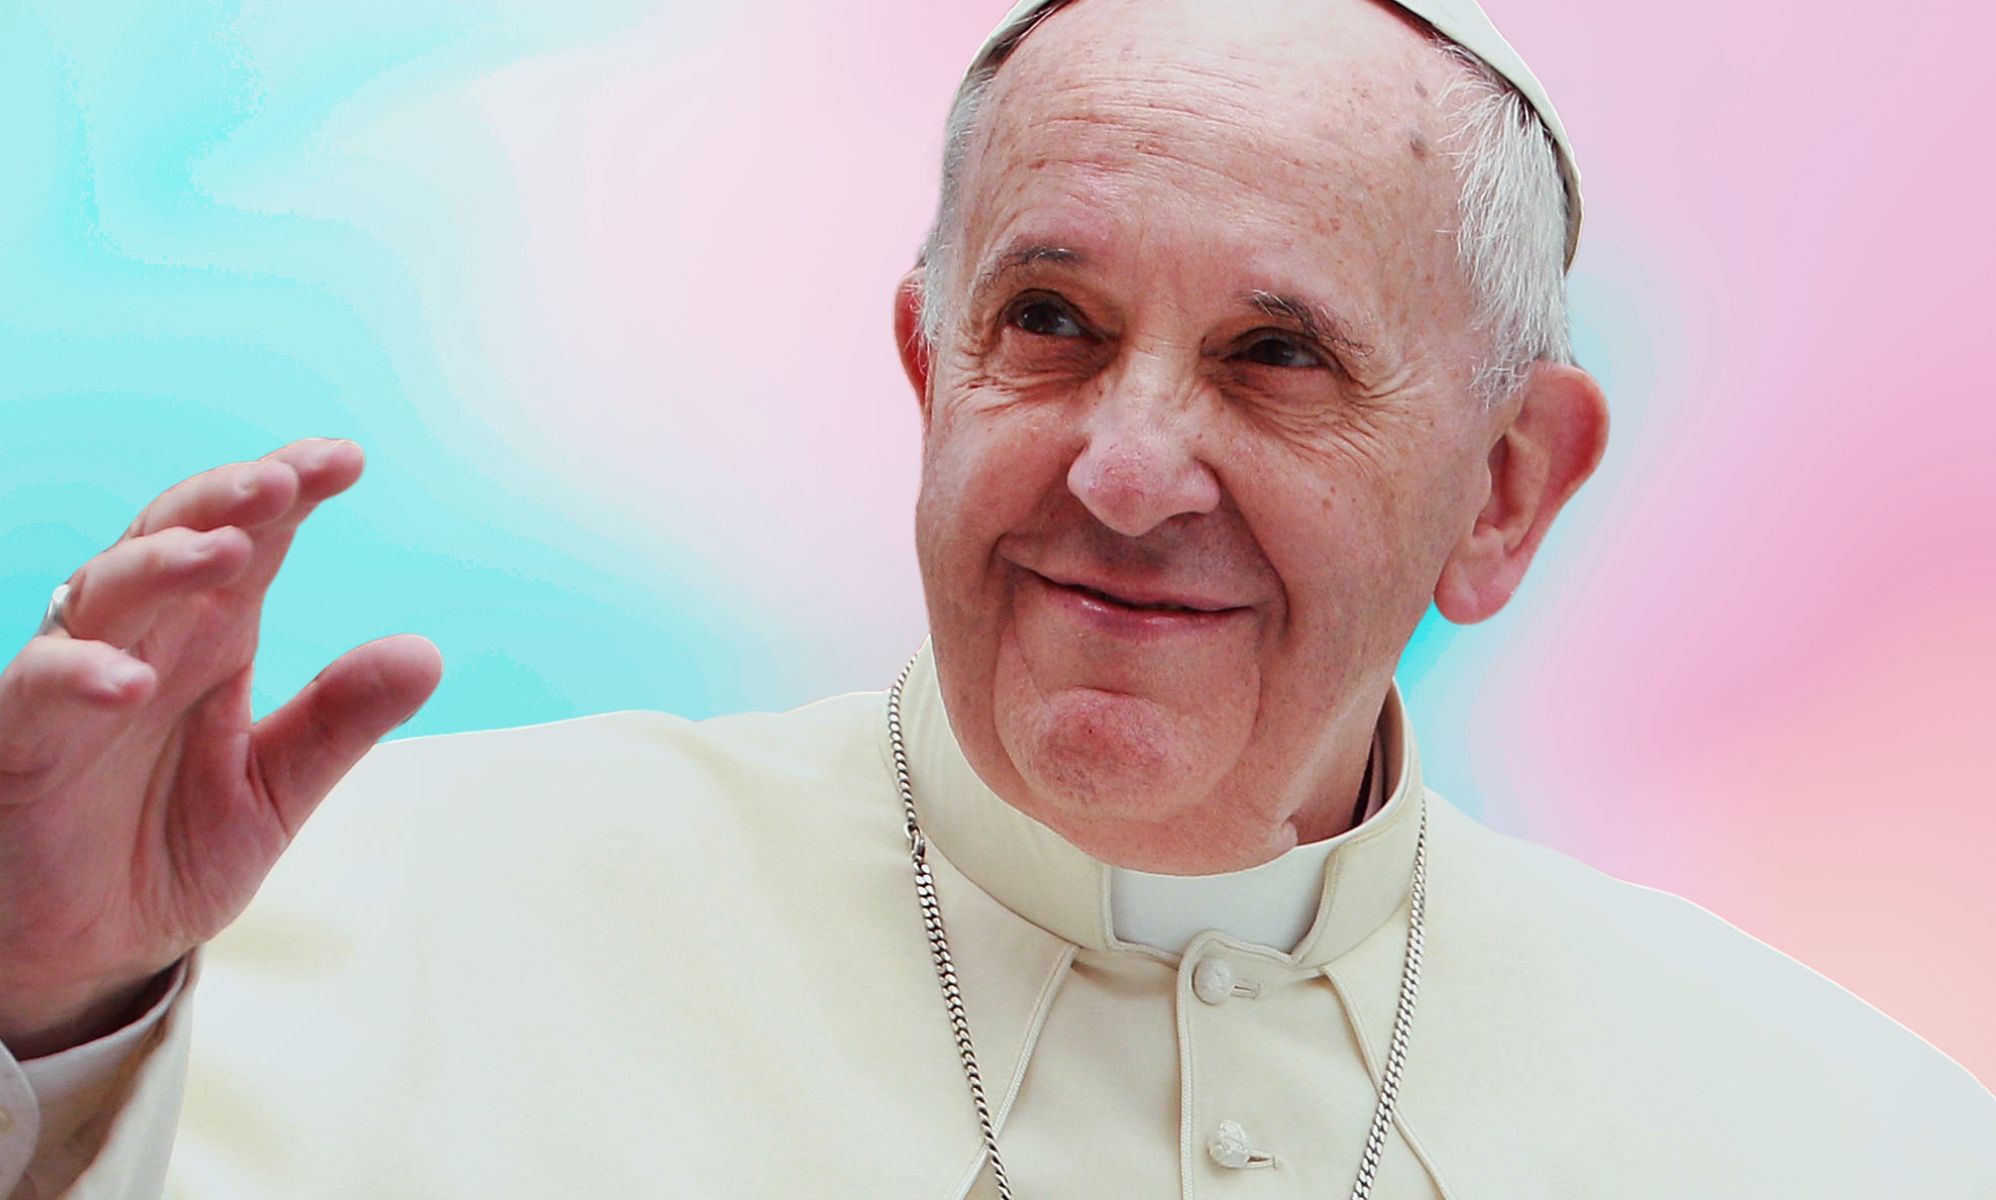 La conflictiva historia de los comentarios LGBTQ+ del Papa Francisco: del 'quién soy yo para juzgar' al 'frociaggine'